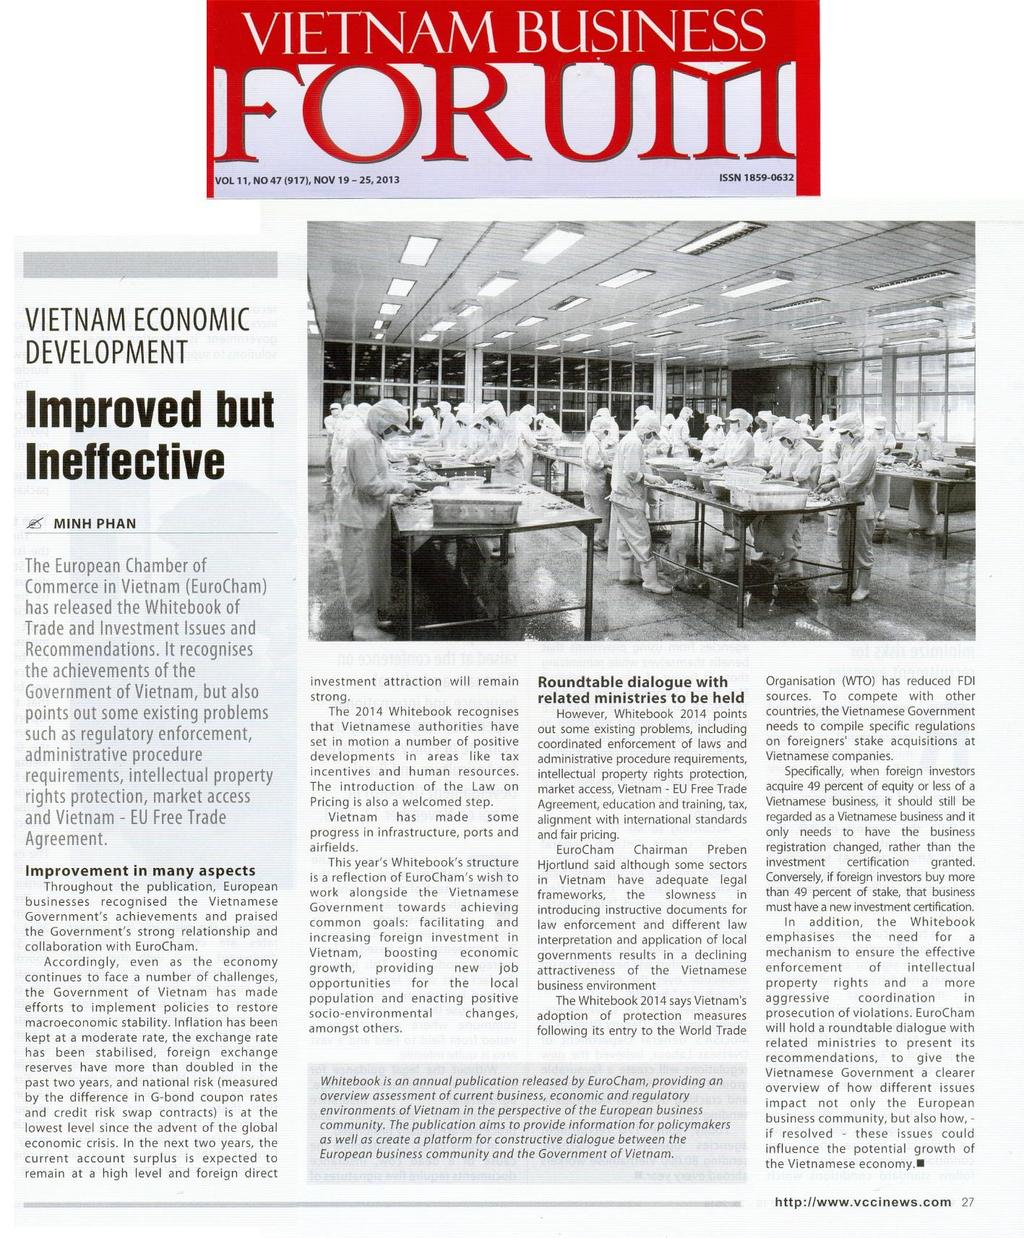 7. Vietnam Business Forum